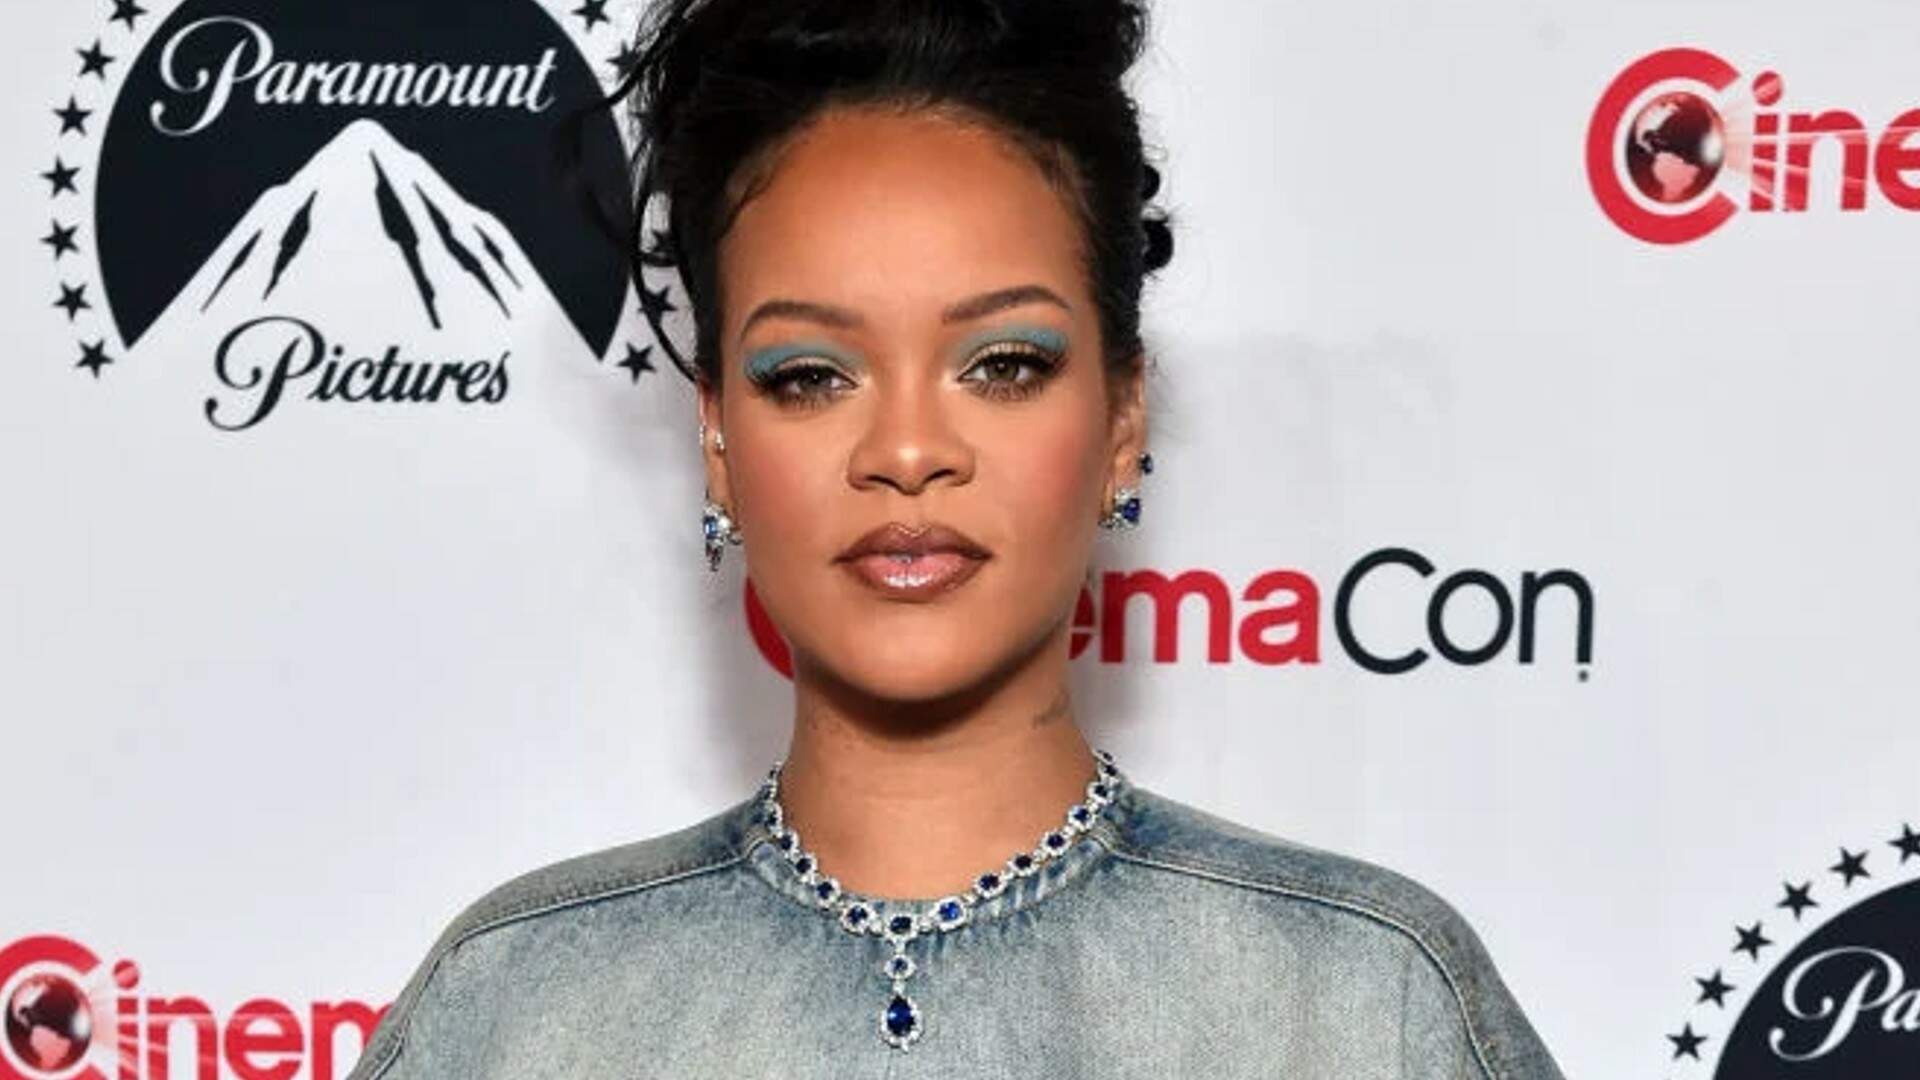 Rihanna nas telonas? Artista é confirmada em elenco da sequência de famoso filme infantil